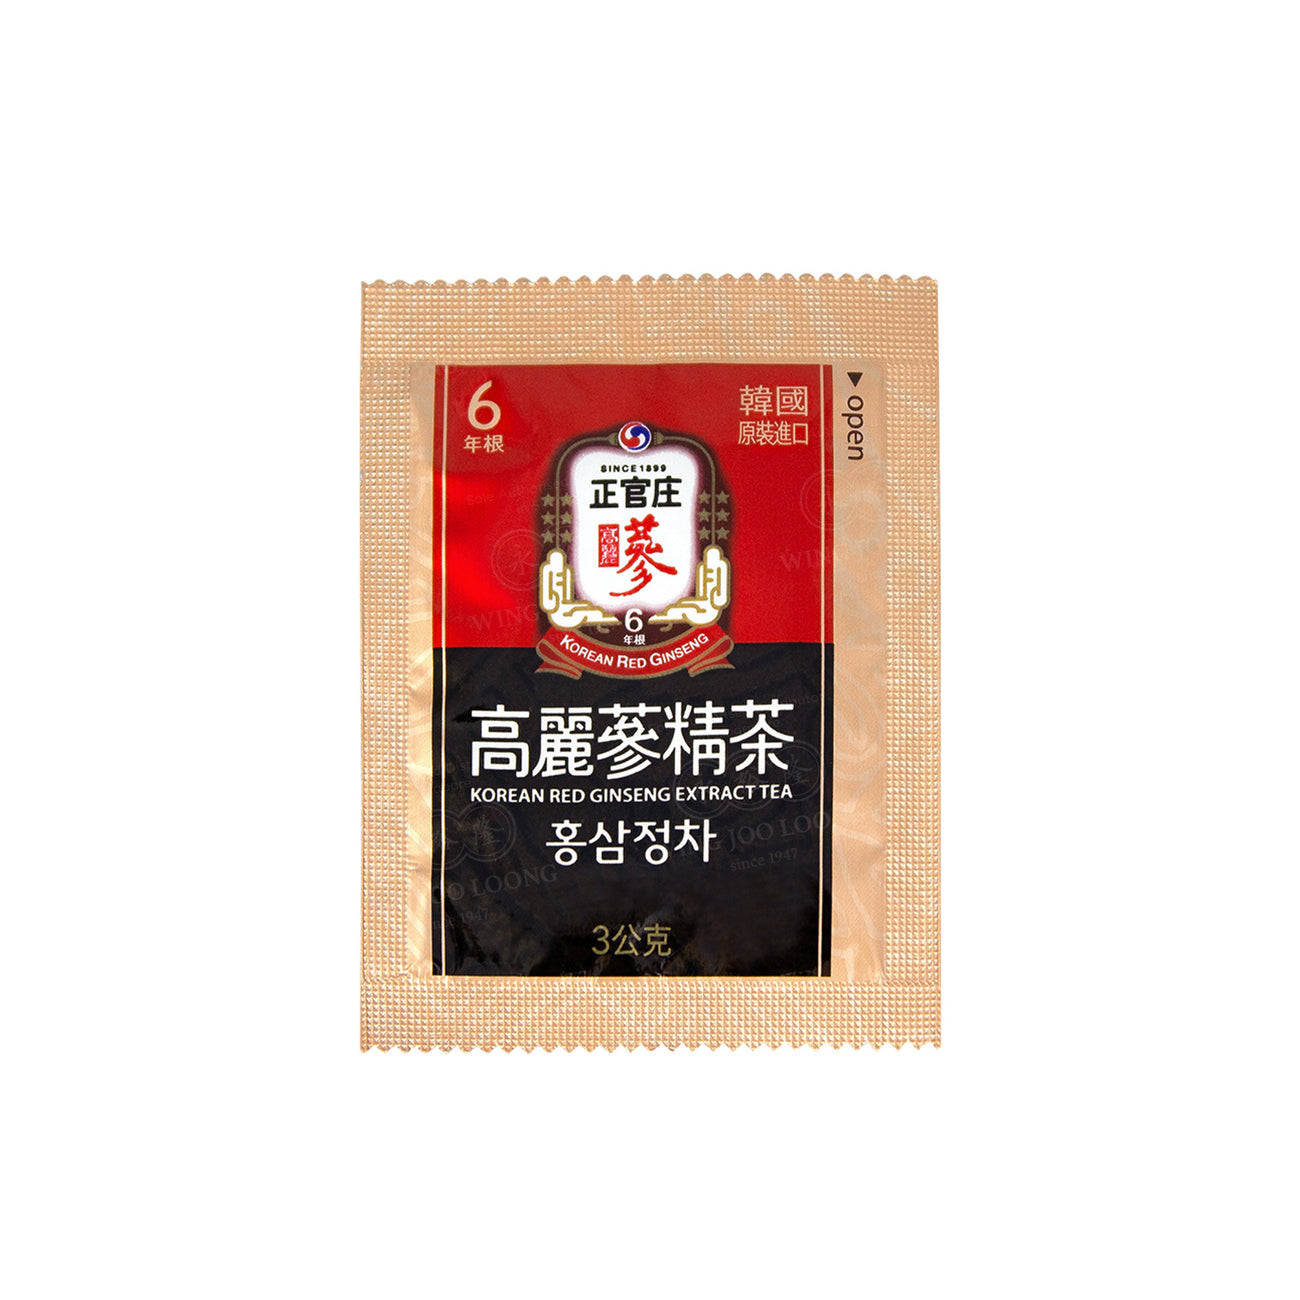 Cheong Kwan Jang Korean Red Ginseng Extract Tea 高丽参精茶